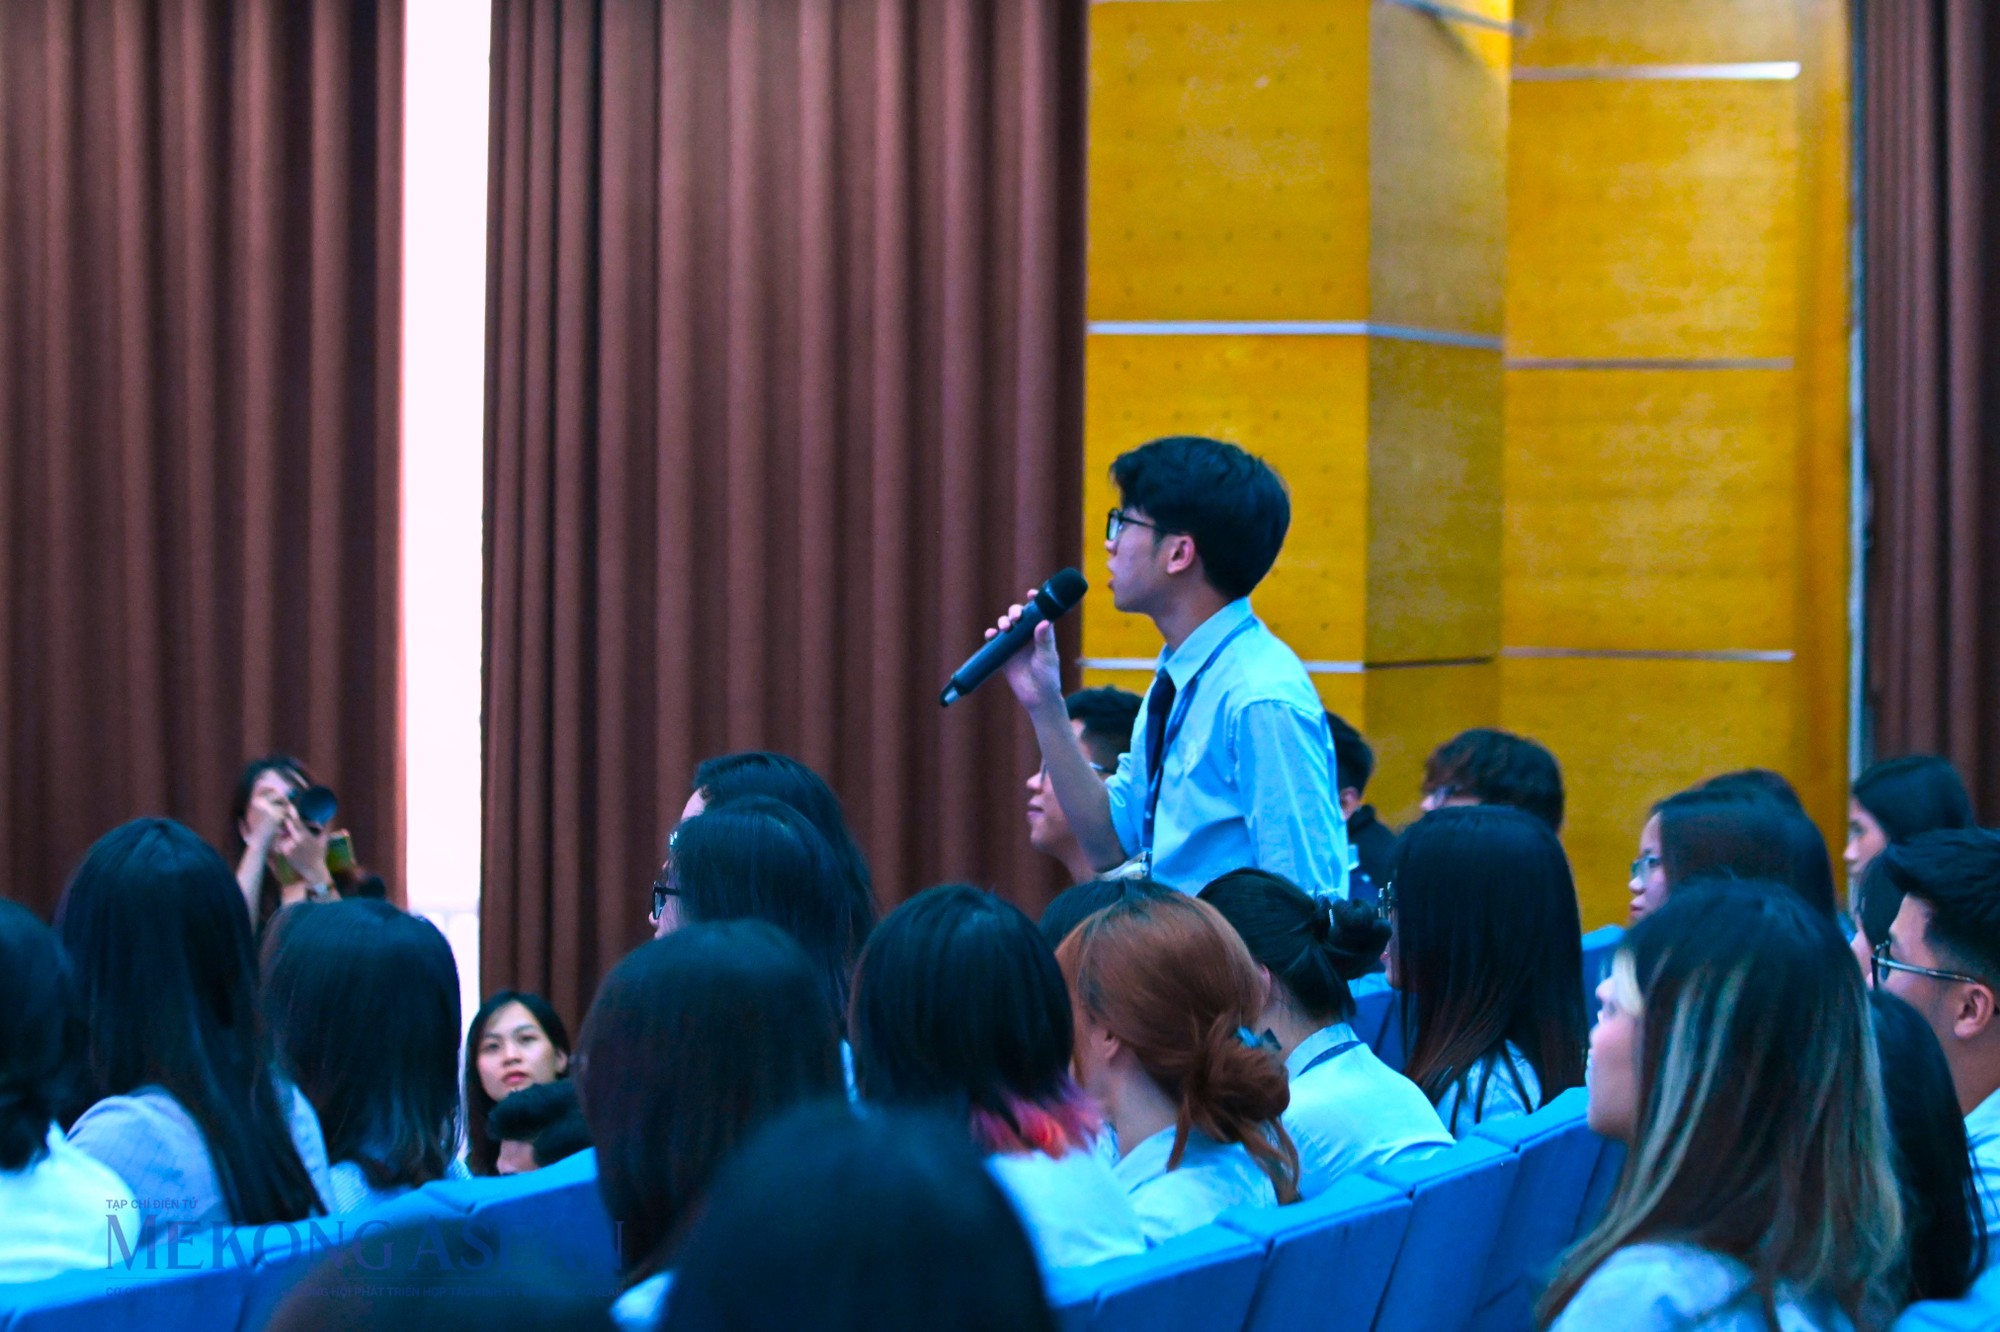 Sinh vi&ecirc;n Học viện Ngoại giao tham gia tại buổi đối thoại. Ảnh: Đỗ Thảo - Mekong ASEAN